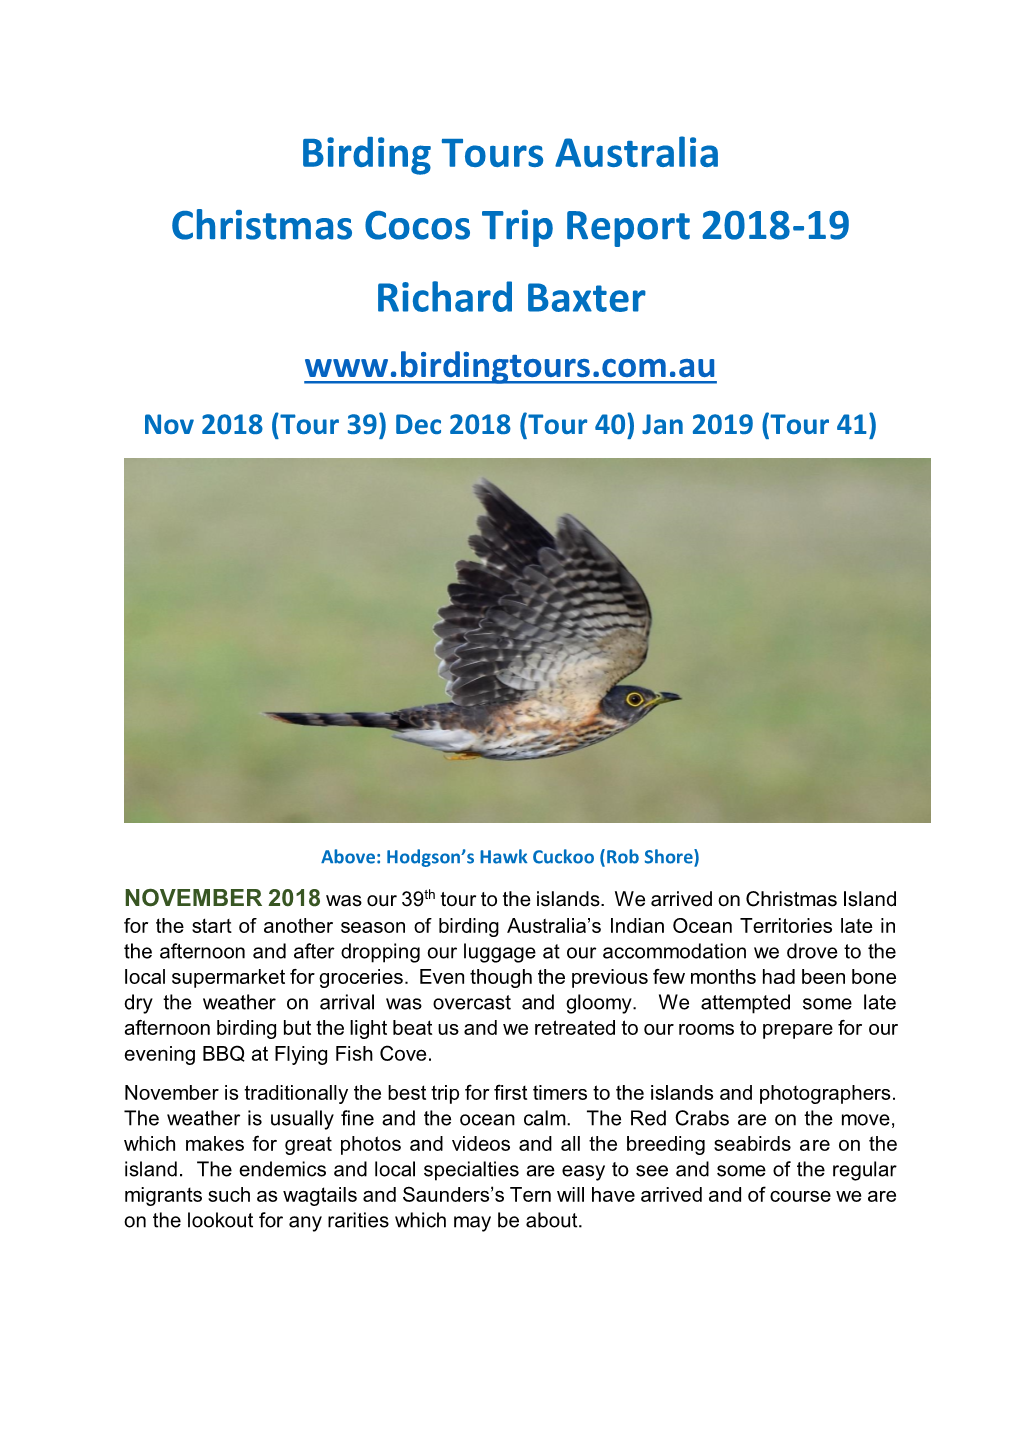 Birding Tours Australia Christmas Cocos Trip Report 2018-19 Richard Baxter Nov 2018 (Tour 39) Dec 2018 (Tour 40) Jan 2019 (Tour 41)